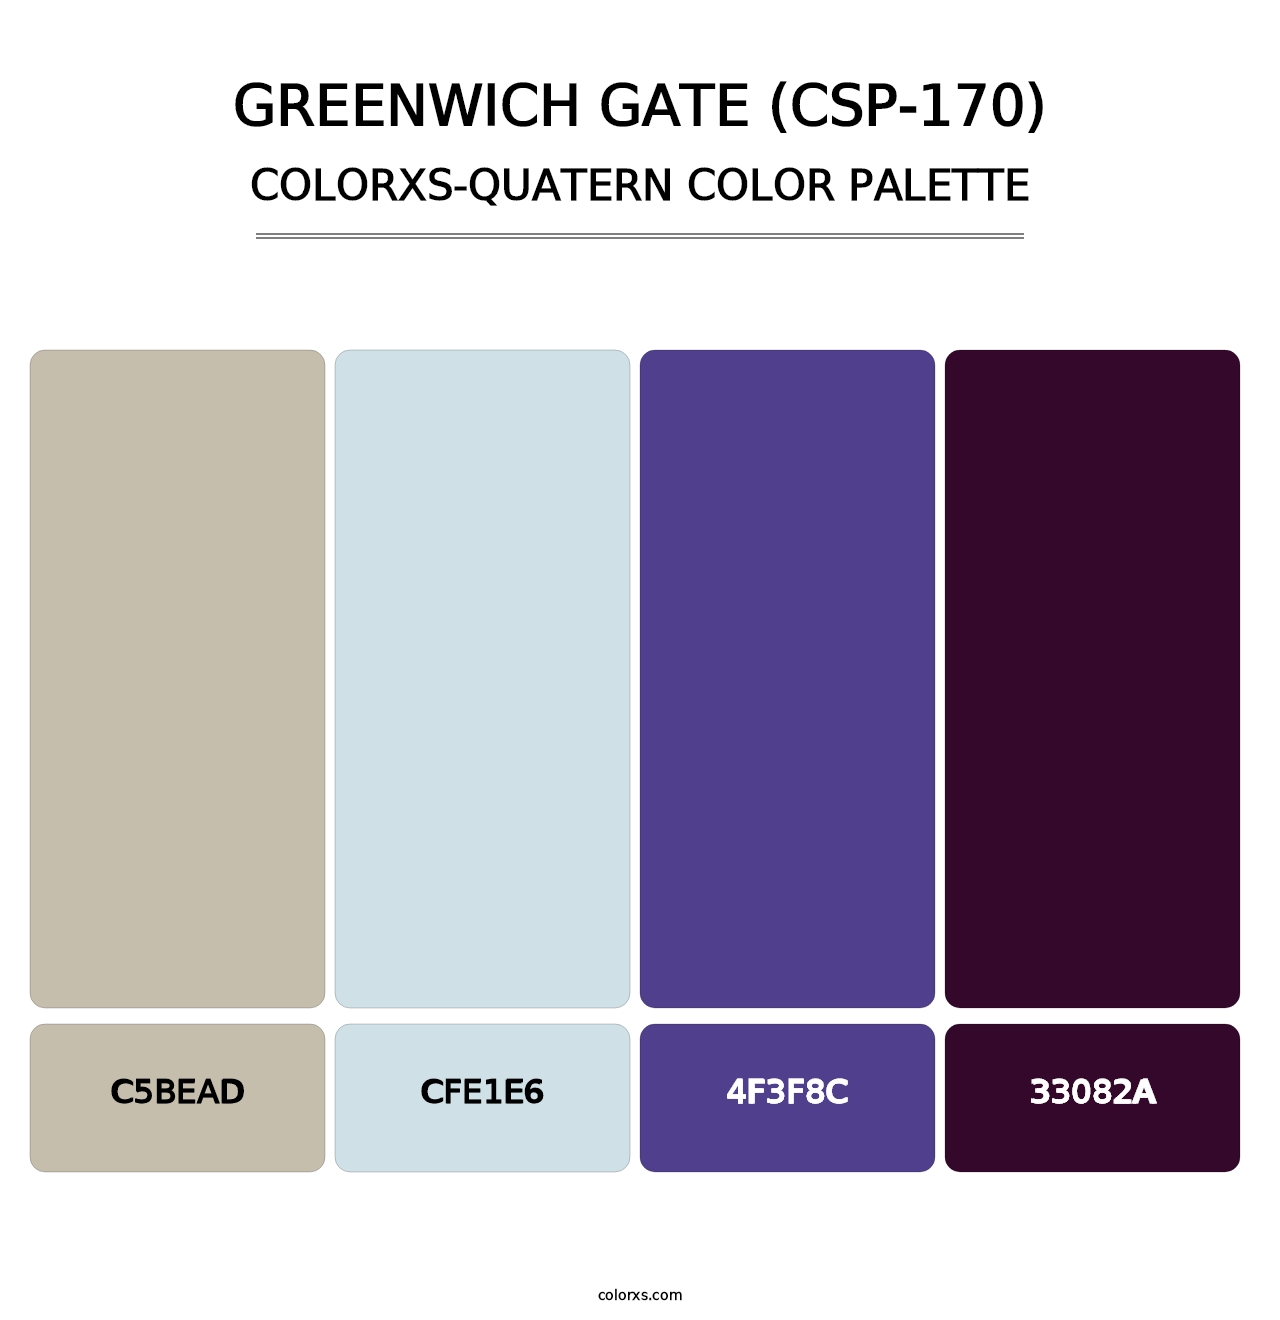 Greenwich Gate (CSP-170) - Colorxs Quatern Palette